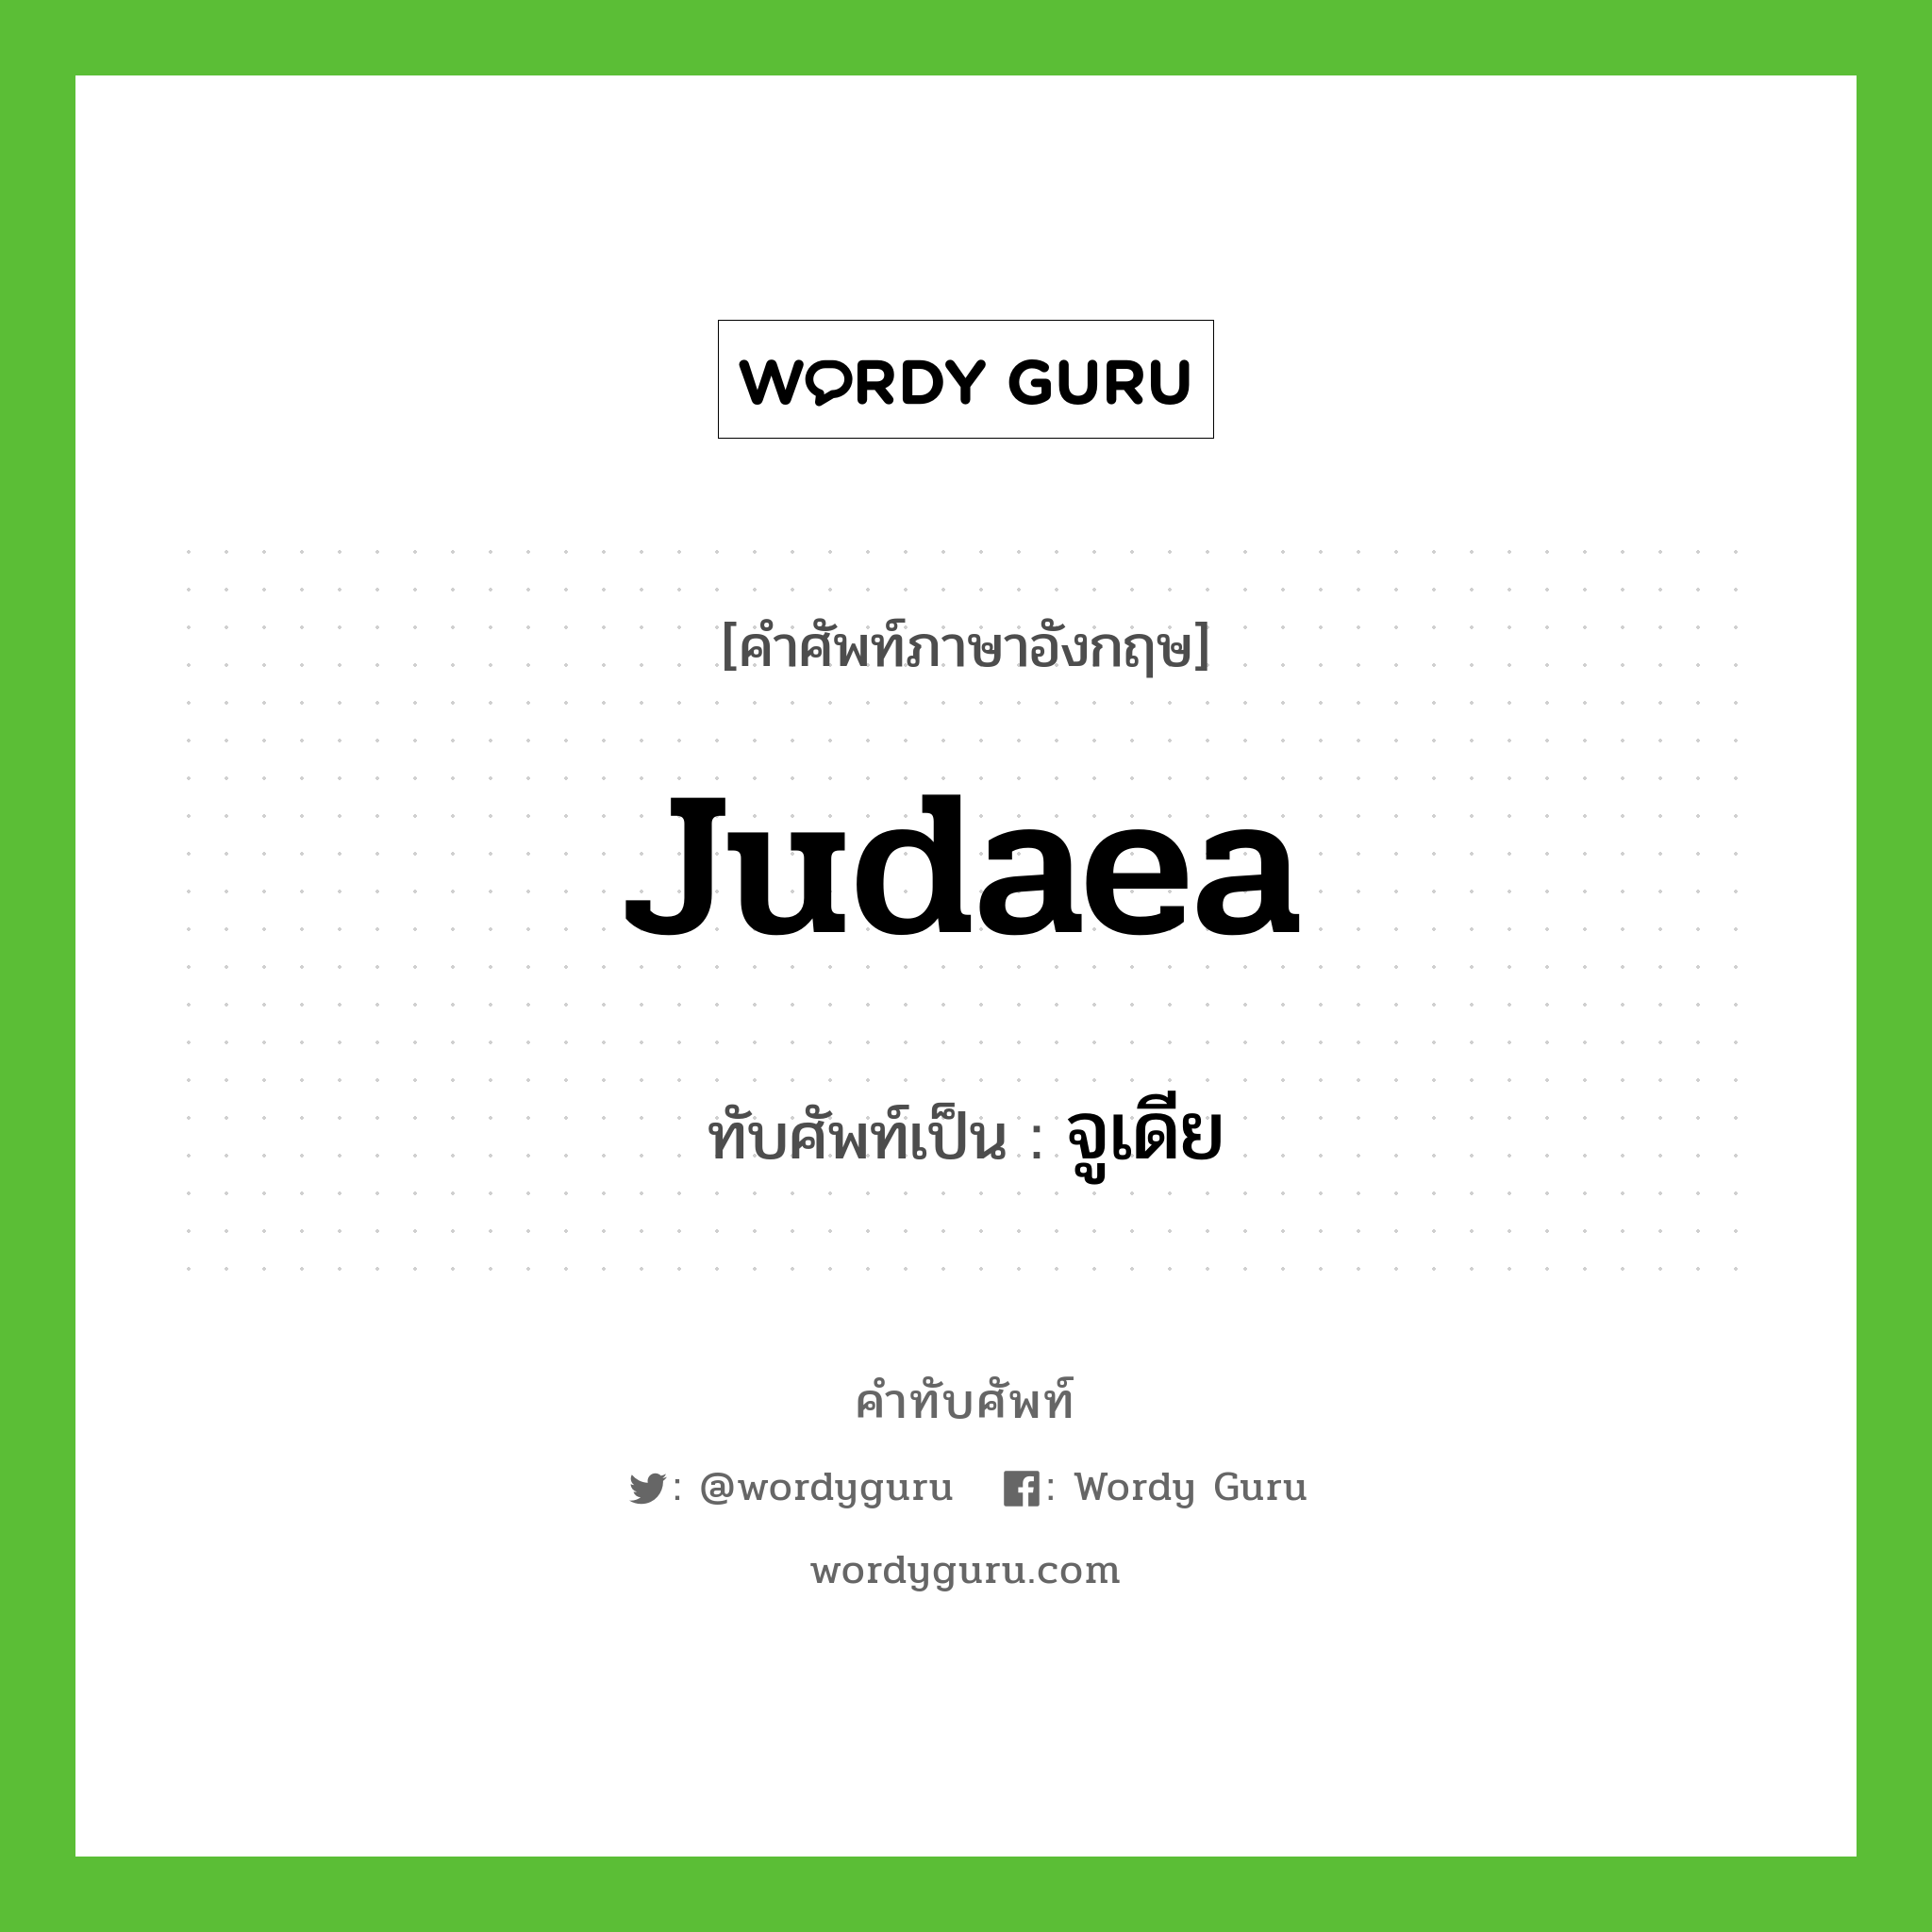 จูเดีย เขียนอย่างไร?, คำศัพท์ภาษาอังกฤษ จูเดีย ทับศัพท์เป็น Judaea